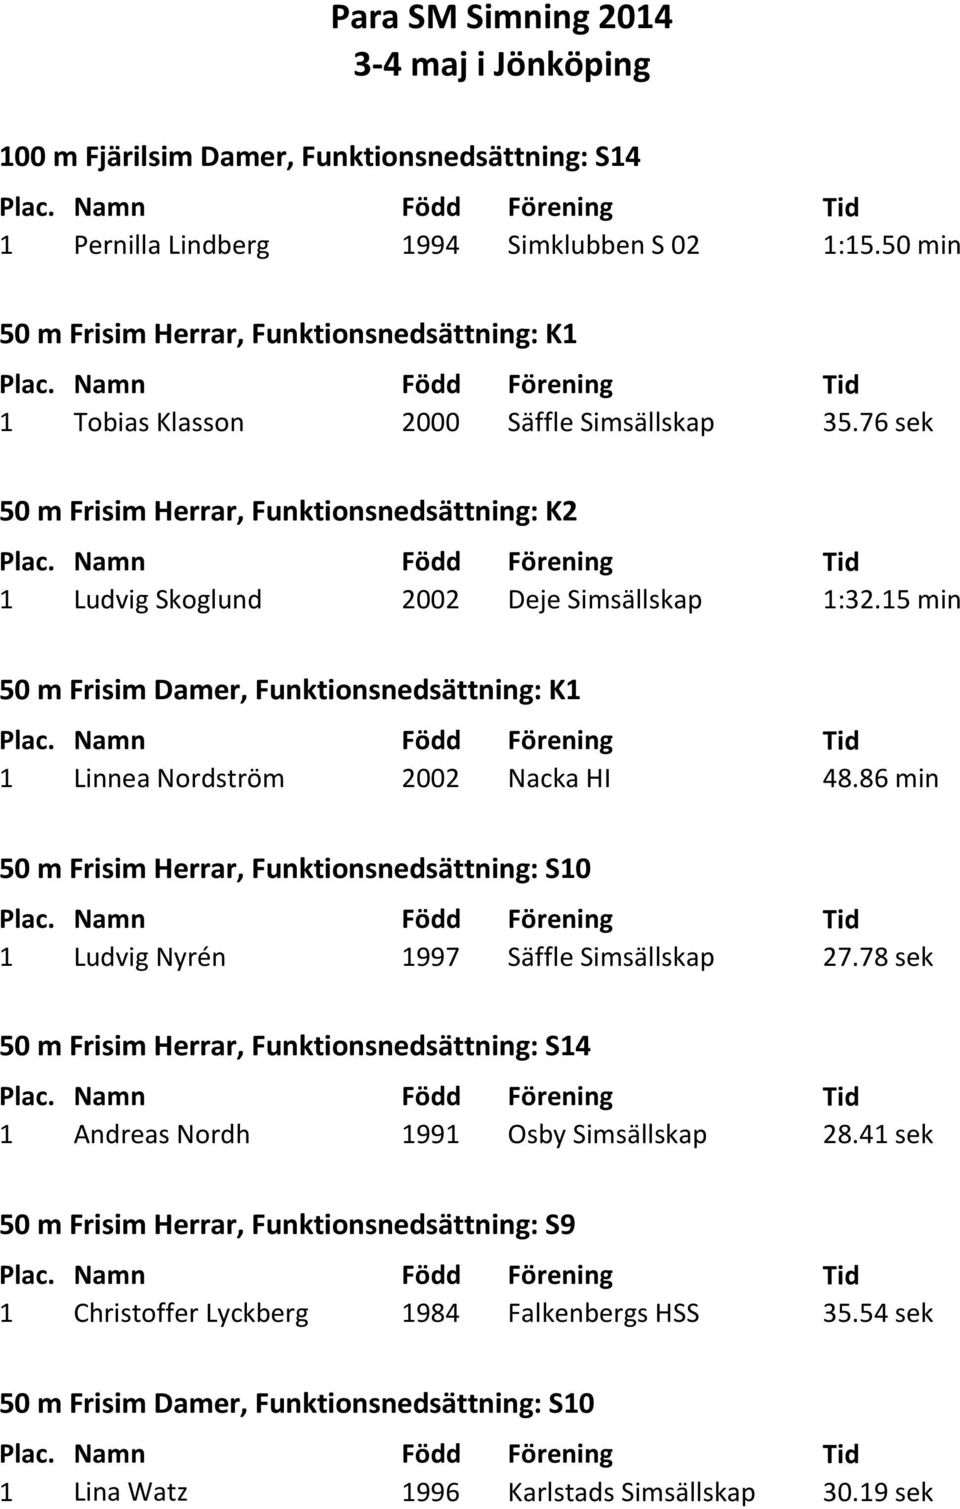 15 min 50 m Frisim Damer, Funktionsnedsättning: K1 1 Linnea Nordström 2002 Nacka HI 48.86 min 50 m Frisim Herrar, Funktionsnedsättning: S10 1 Ludvig Nyrén 1997 Säffle 27.